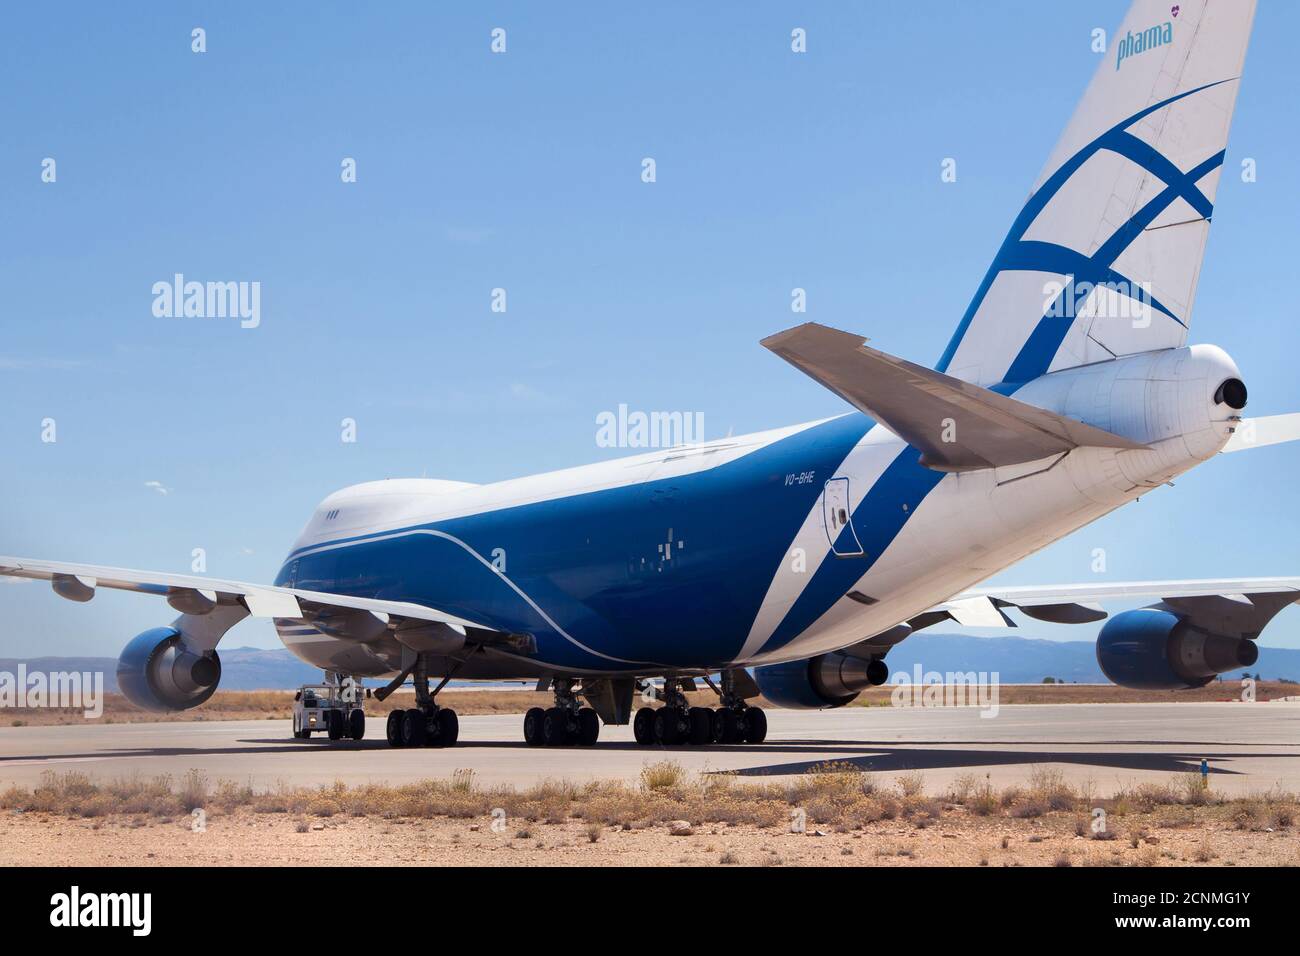 Teruel, España - 17 de agosto de 2020: Puente aéreo carga Boeing 747-400 almacenado en el aeropuerto de Teruel, España. Foto de stock